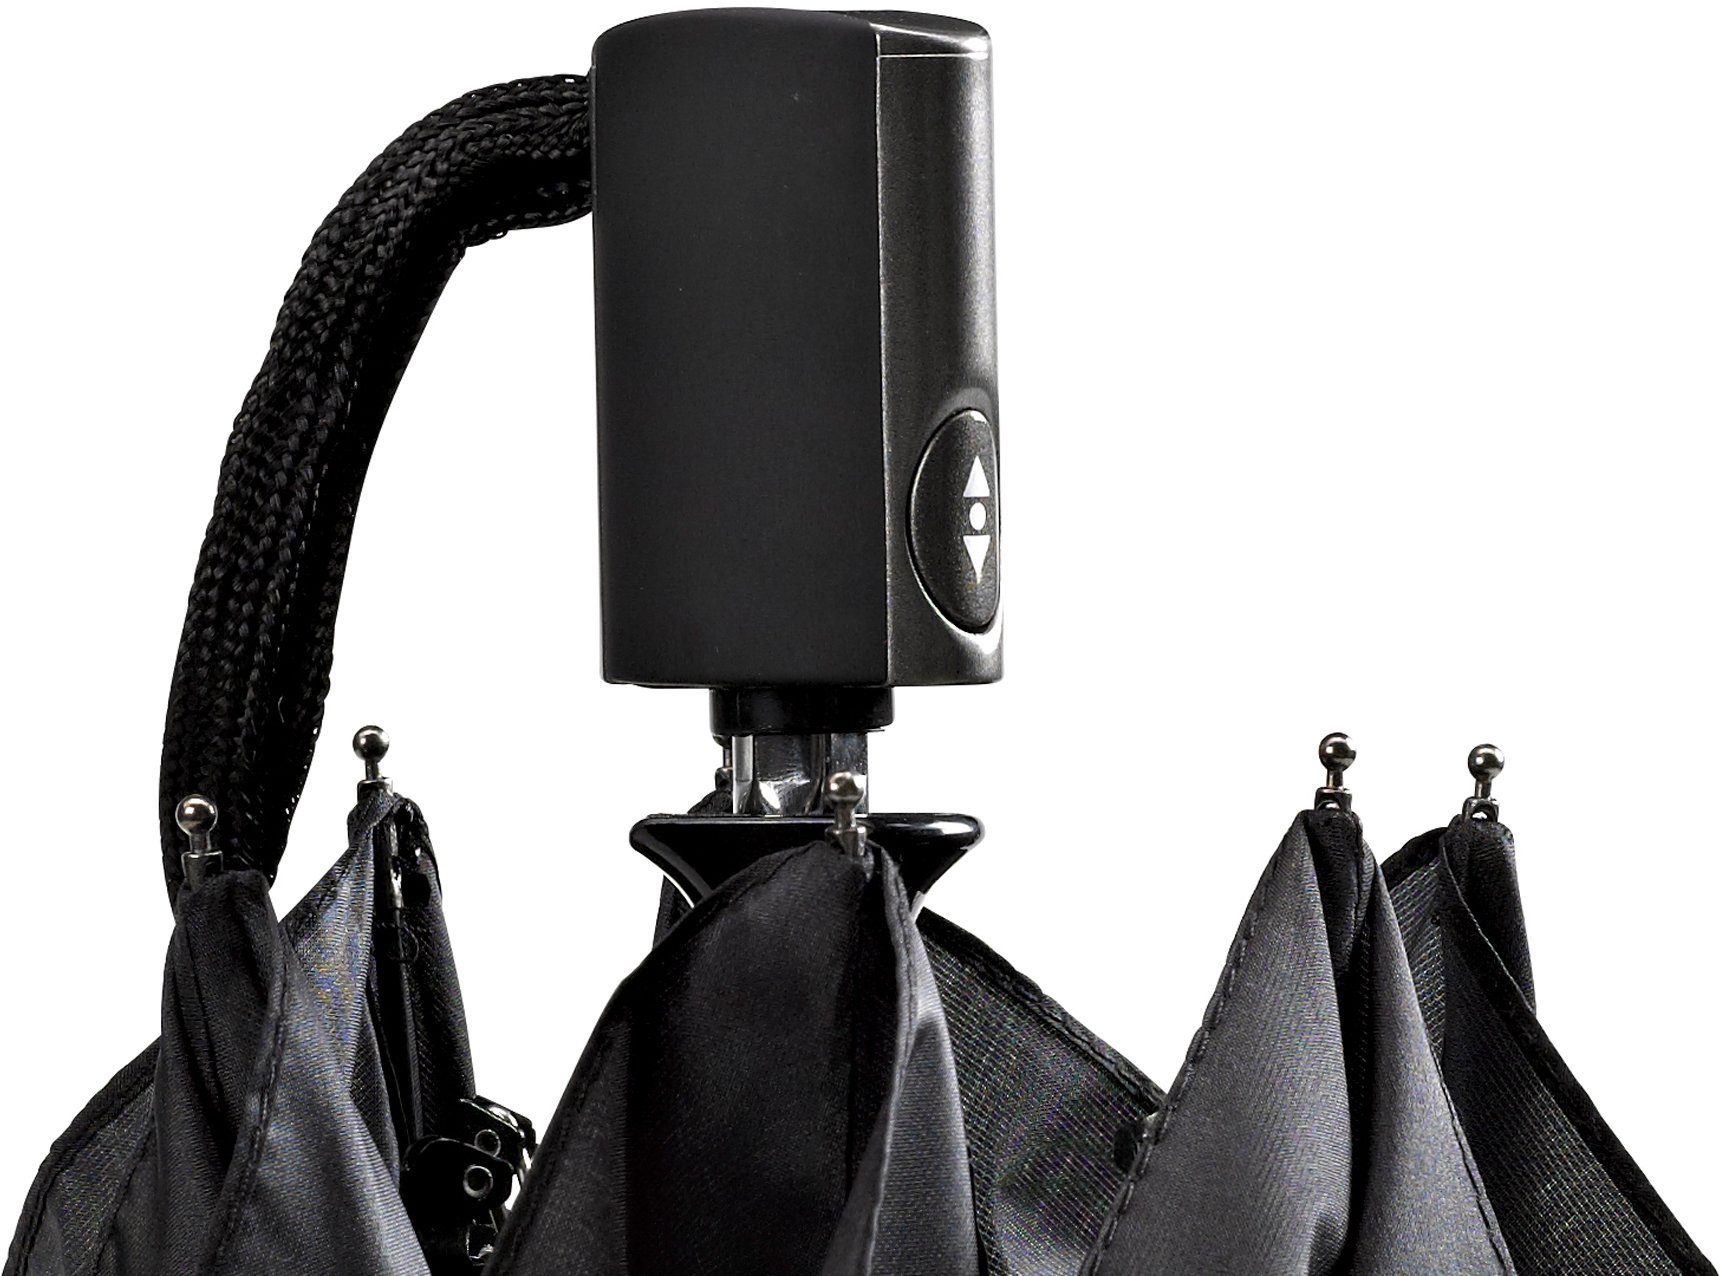 Taschenregenschirm extra leicht EuroSCHIRM® schwarz, 3224, Automatik flach und